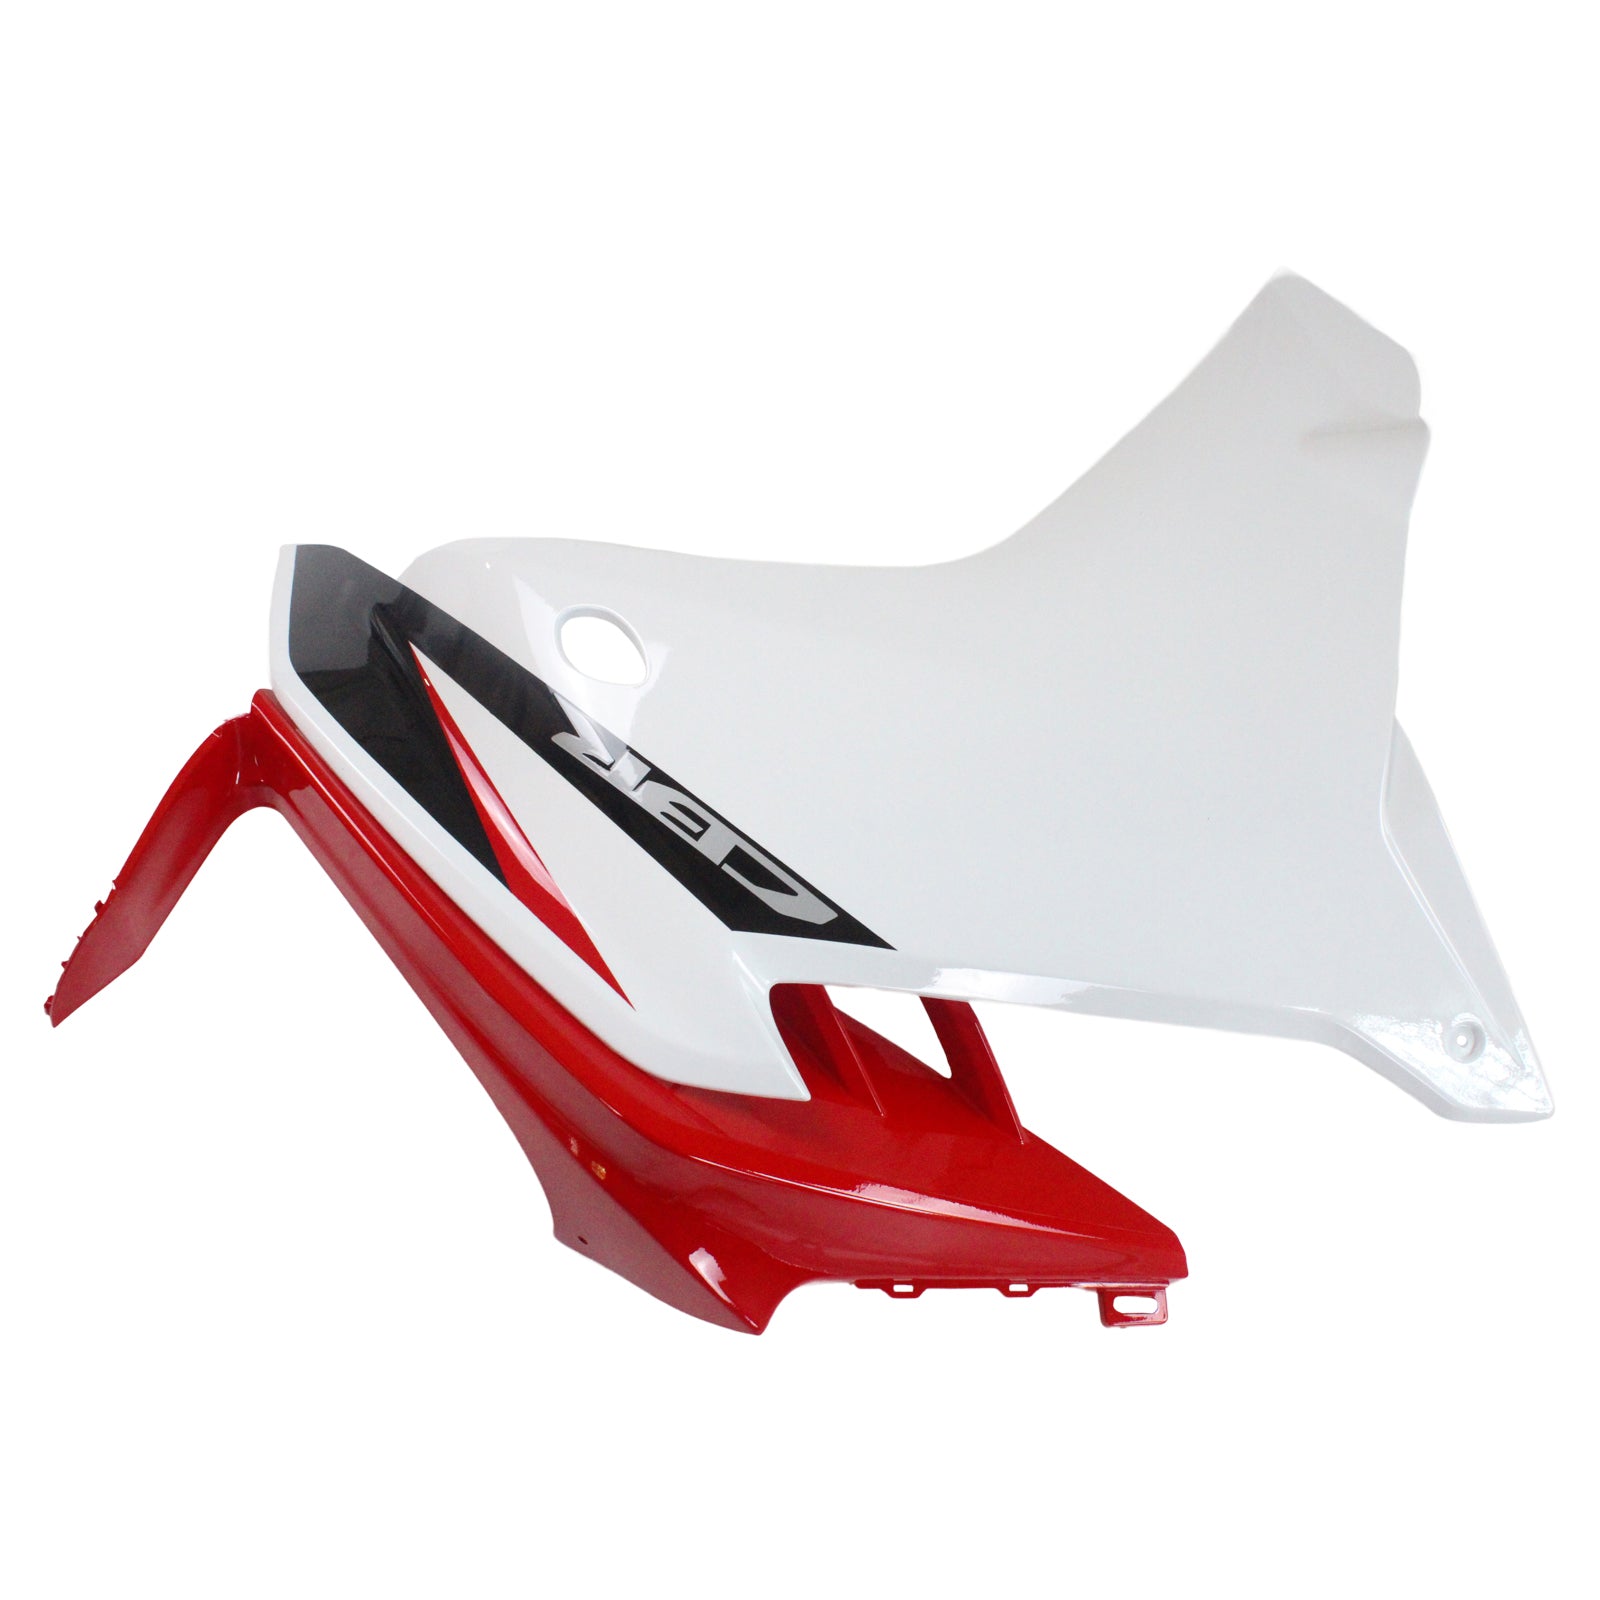 Amotopart 2011-2013 CBR600F Honda Red&White Fairing Kit